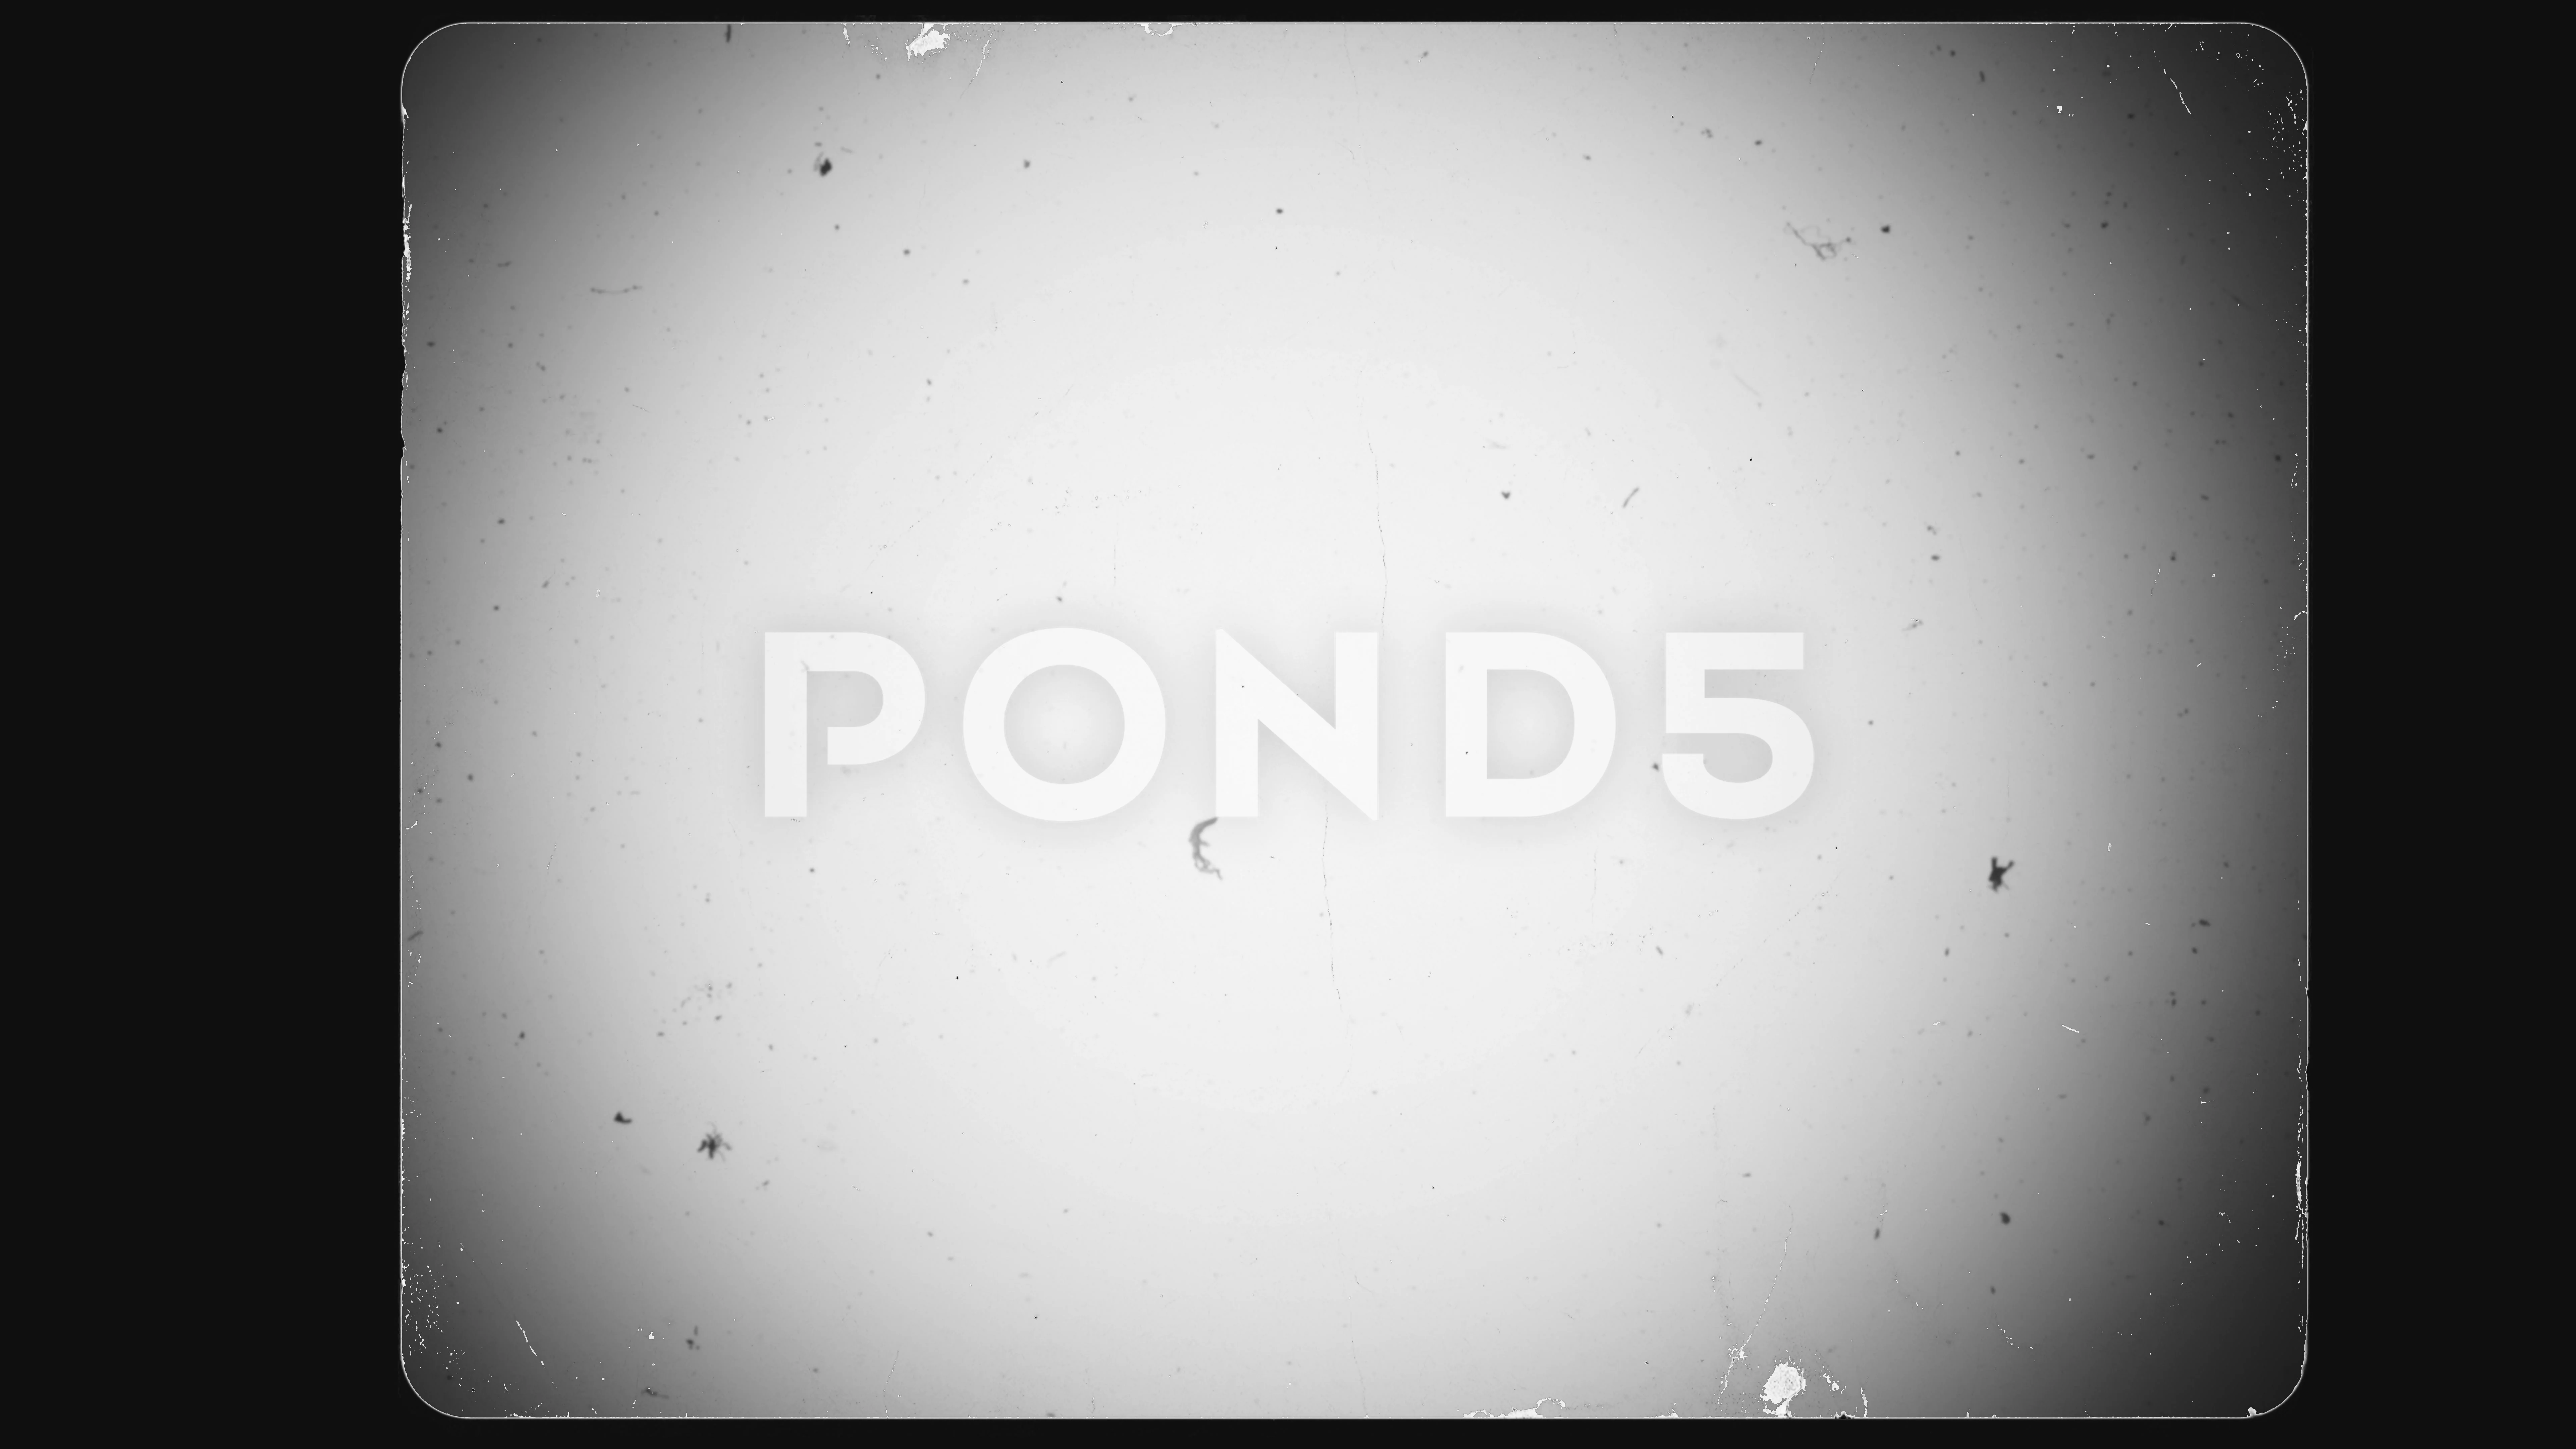 https://images.pond5.com/old-film-frame-8mm-noir-235965876_prevstill.jpeg